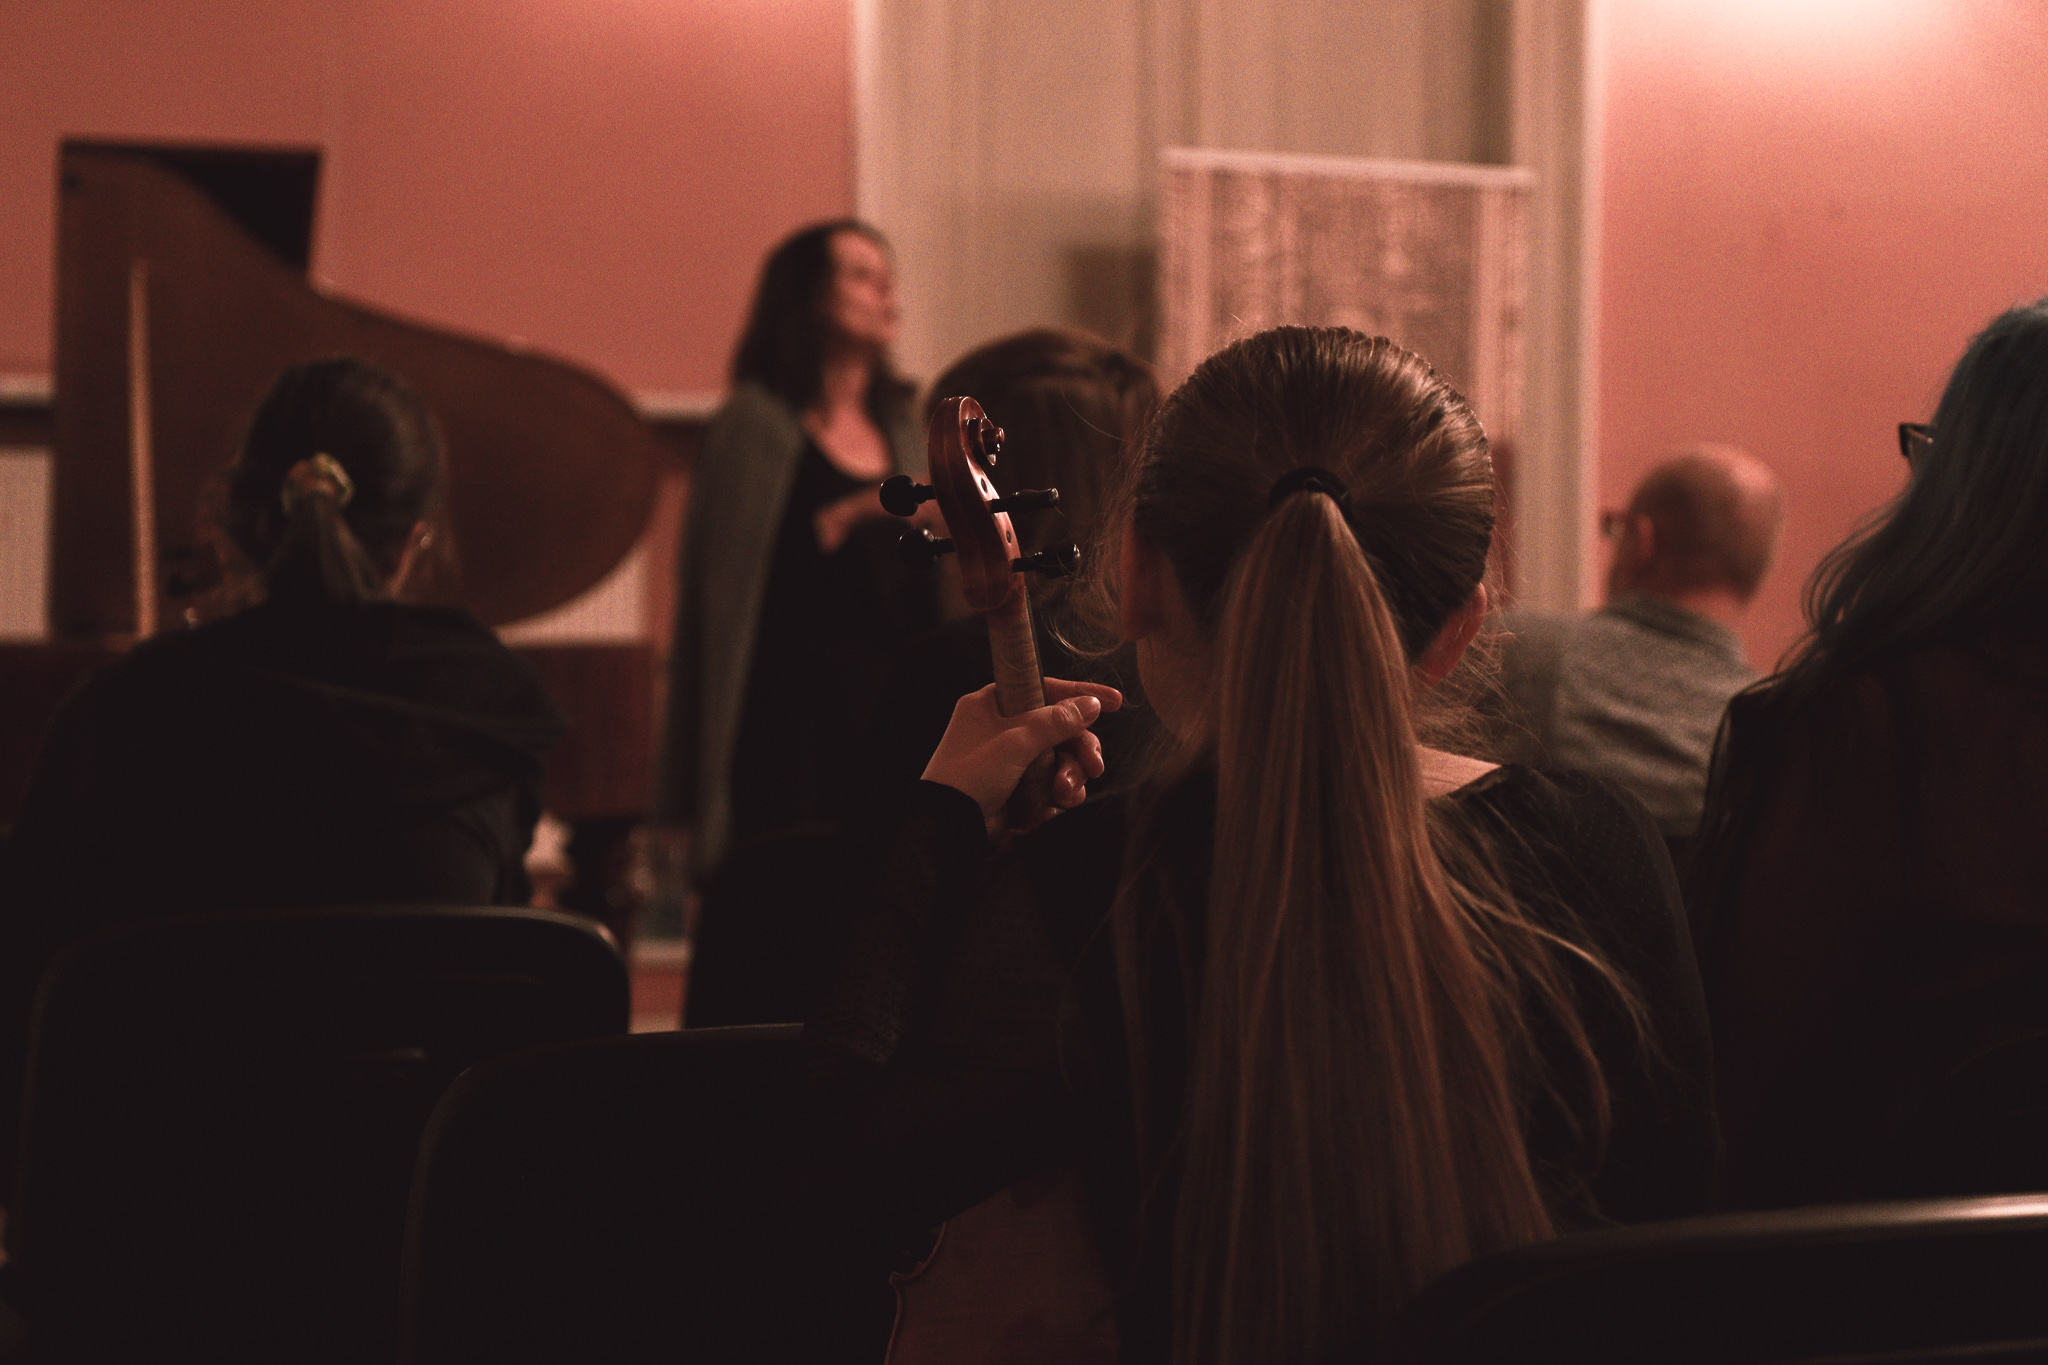 Na pierwszym planie siedzi dziewczyna z długimi włosami. W dłoniach trzyma skrzypce. Widoczna od tyłu. W tle widać kobietę zapowiadającą koncert.